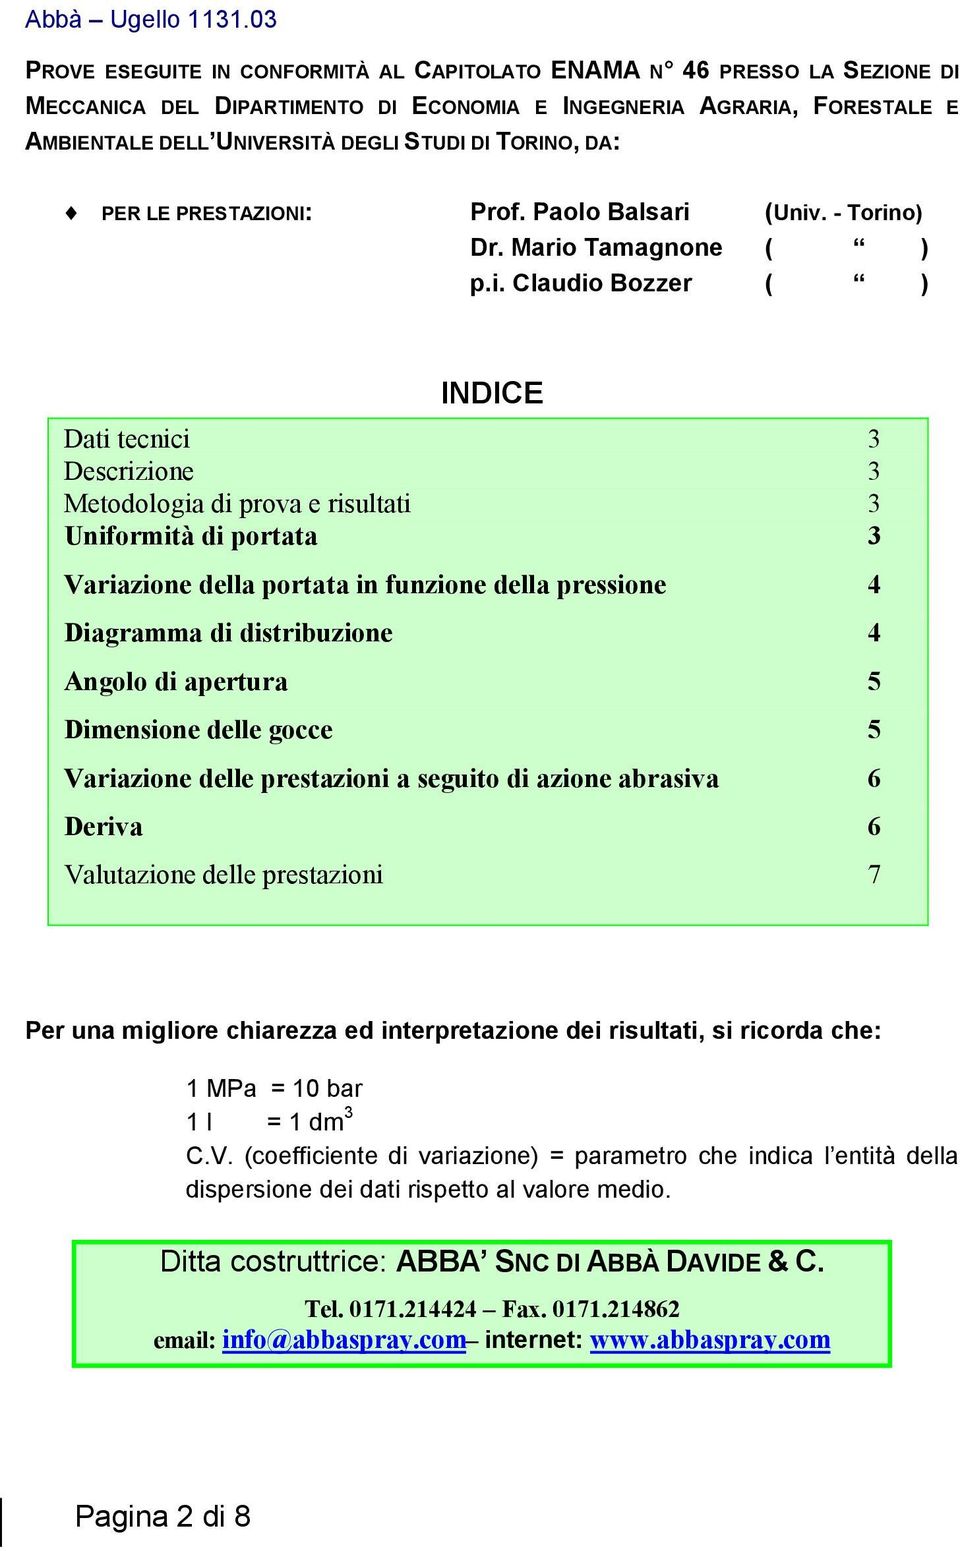 (Univ. - Torino) Dr. Mario Tamagnone ( ) p.i. Claudio Bozzer ( ) INDICE Dati tecnici 3 Descrizione 3 Metodologia di prova e risultati 3 Uniformità di portata 3 Variazione della portata in funzione